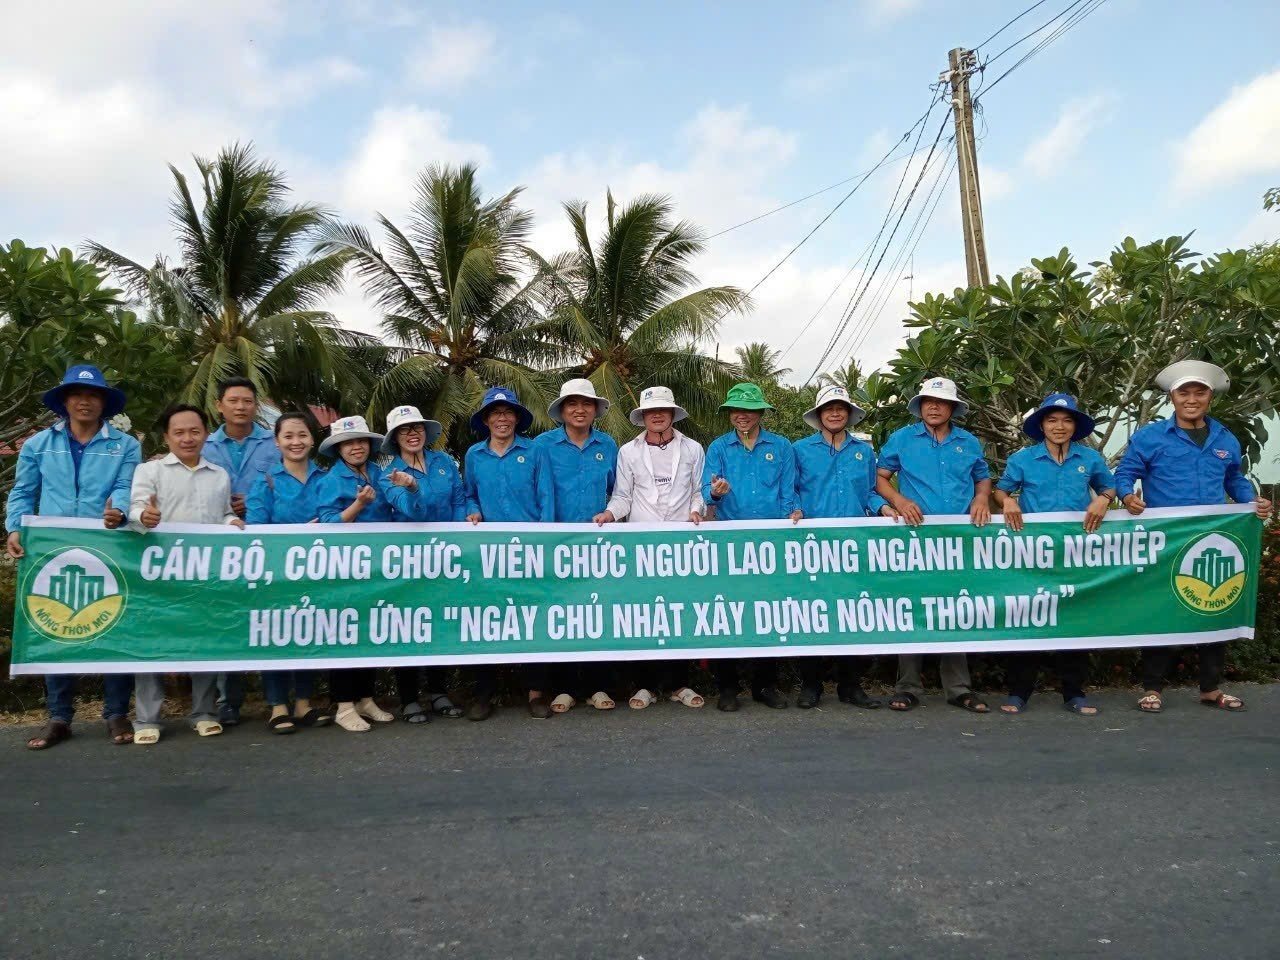 Tỉnh Sóc Trăng: Mô hình Ngày Chủ nhật xây dựng nông thôn mới ở huyện Cù Lao Dung